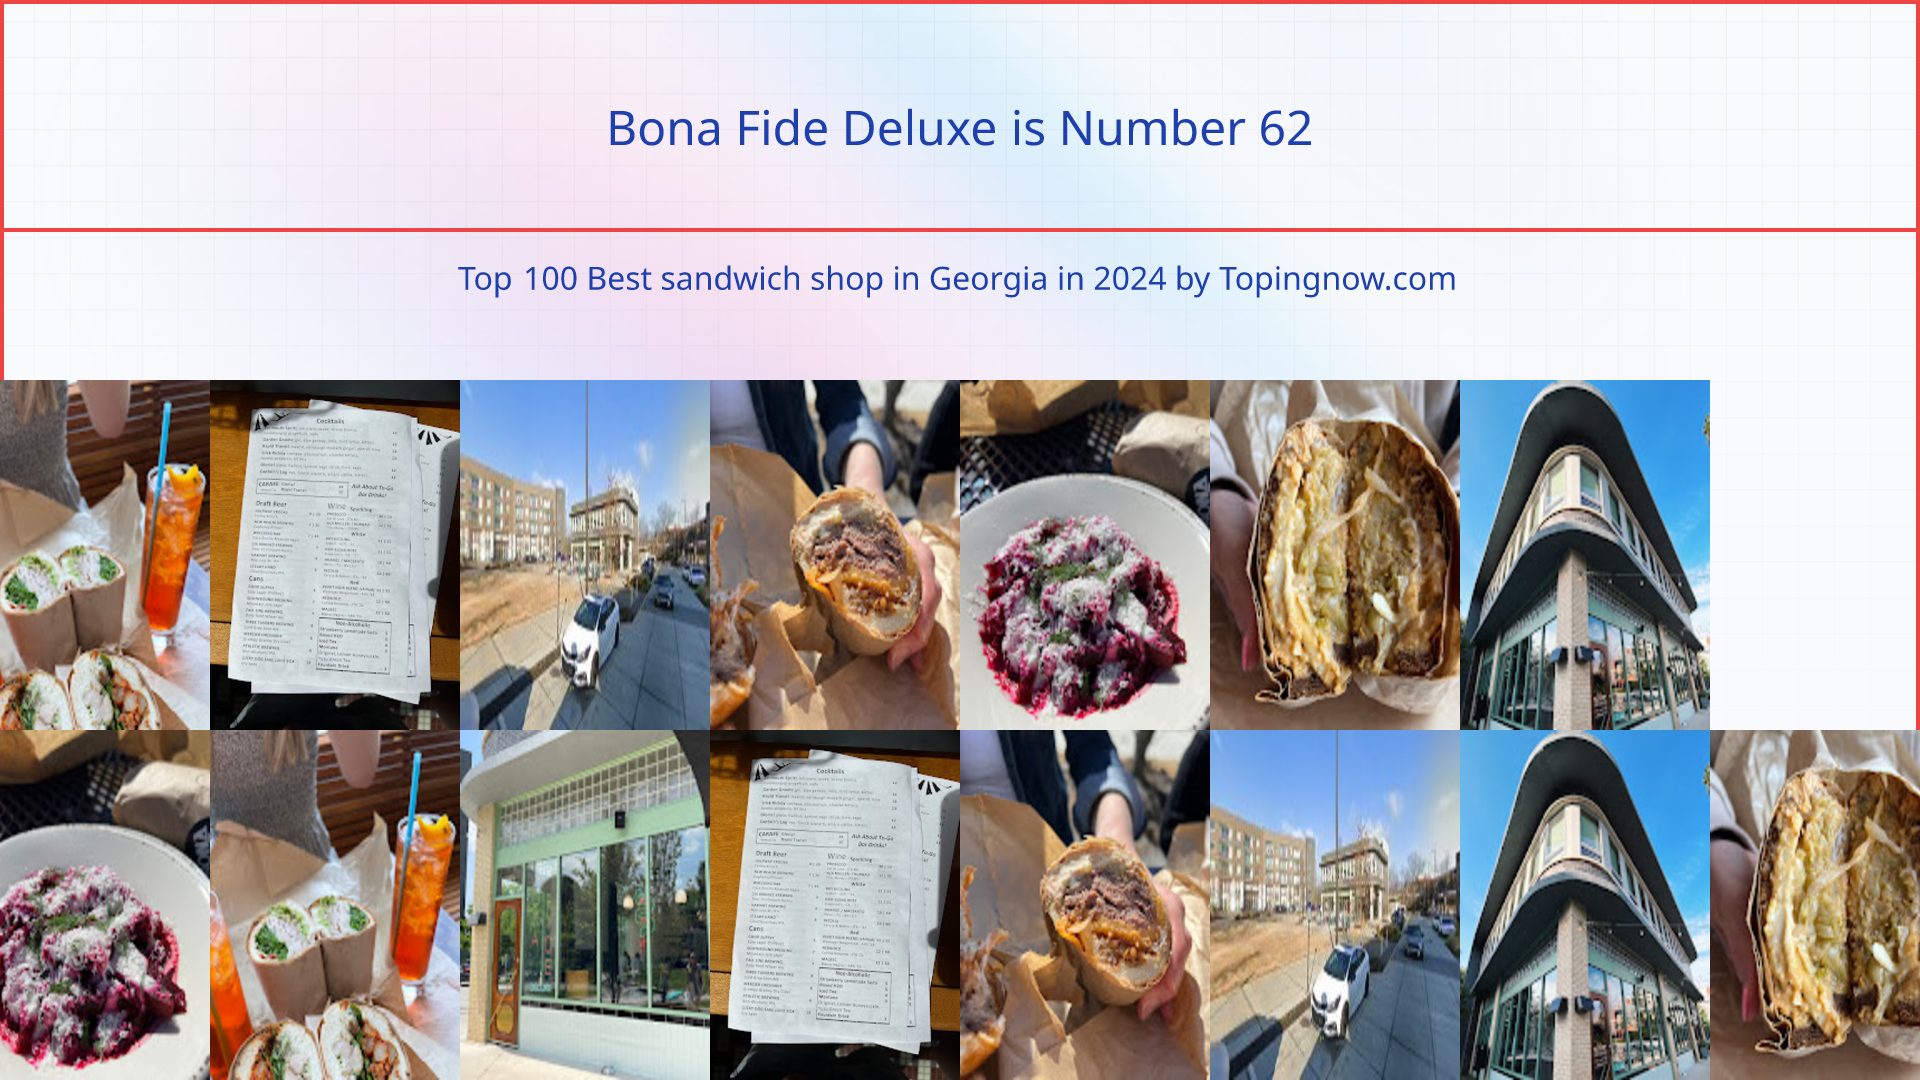 Bona Fide Deluxe: Top 100 Best sandwich shop in Georgia in 2024